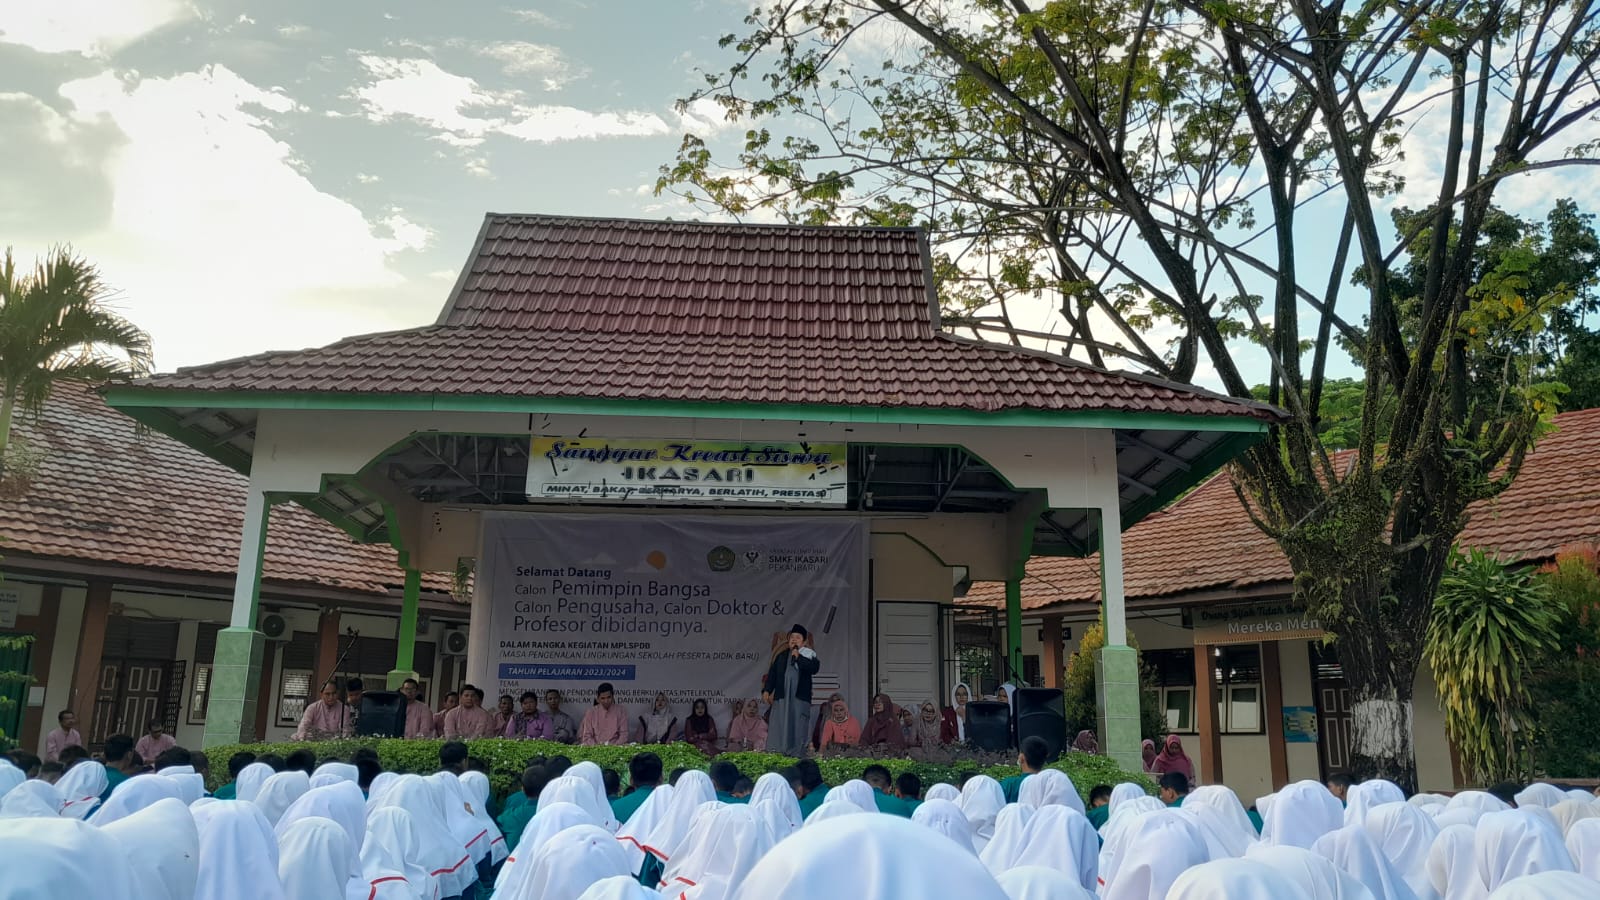 SMKF Ikasari Pekanbaru Adakan Kajian Rutin Jum’at Awal Bulan Bersama Ustad Rasmi